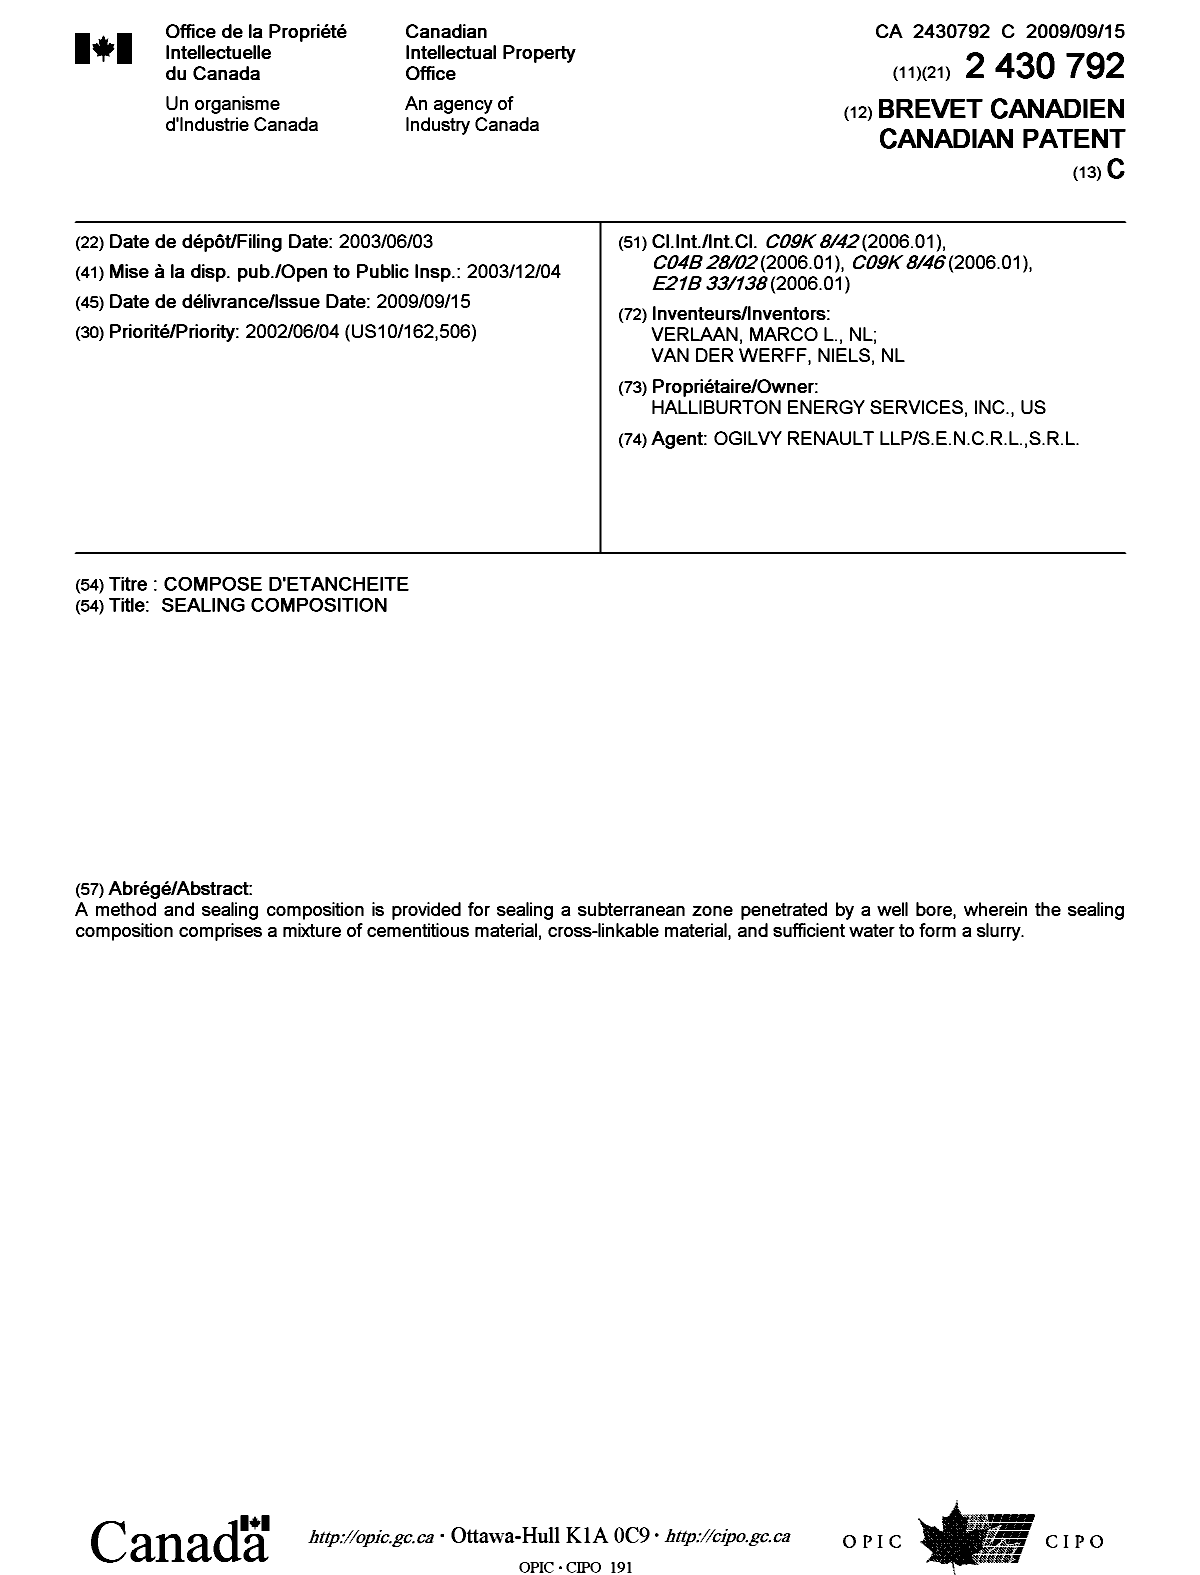 Document de brevet canadien 2430792. Page couverture 20090825. Image 1 de 1